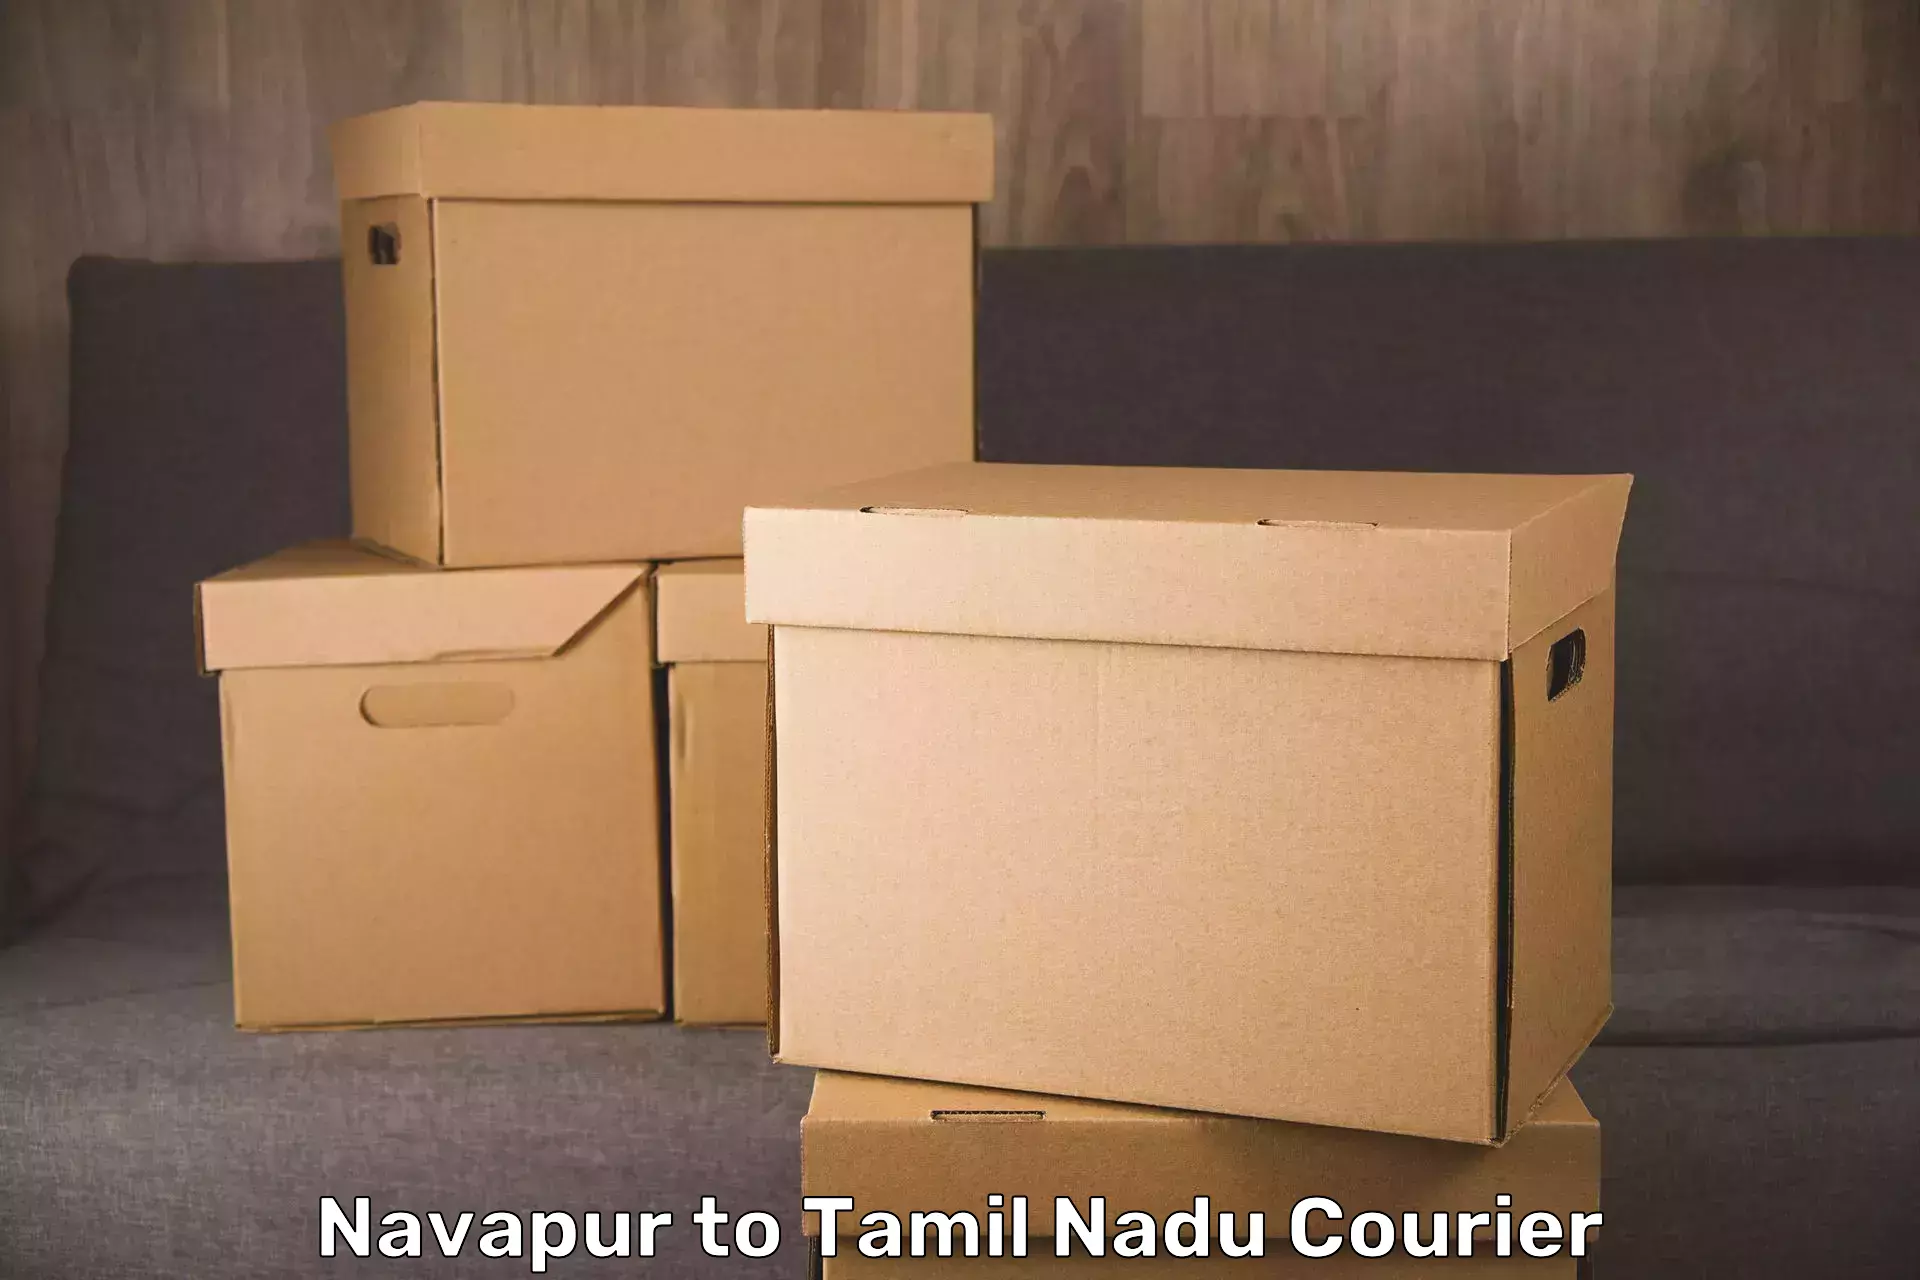 Baggage transport network Navapur to Tamil Nadu